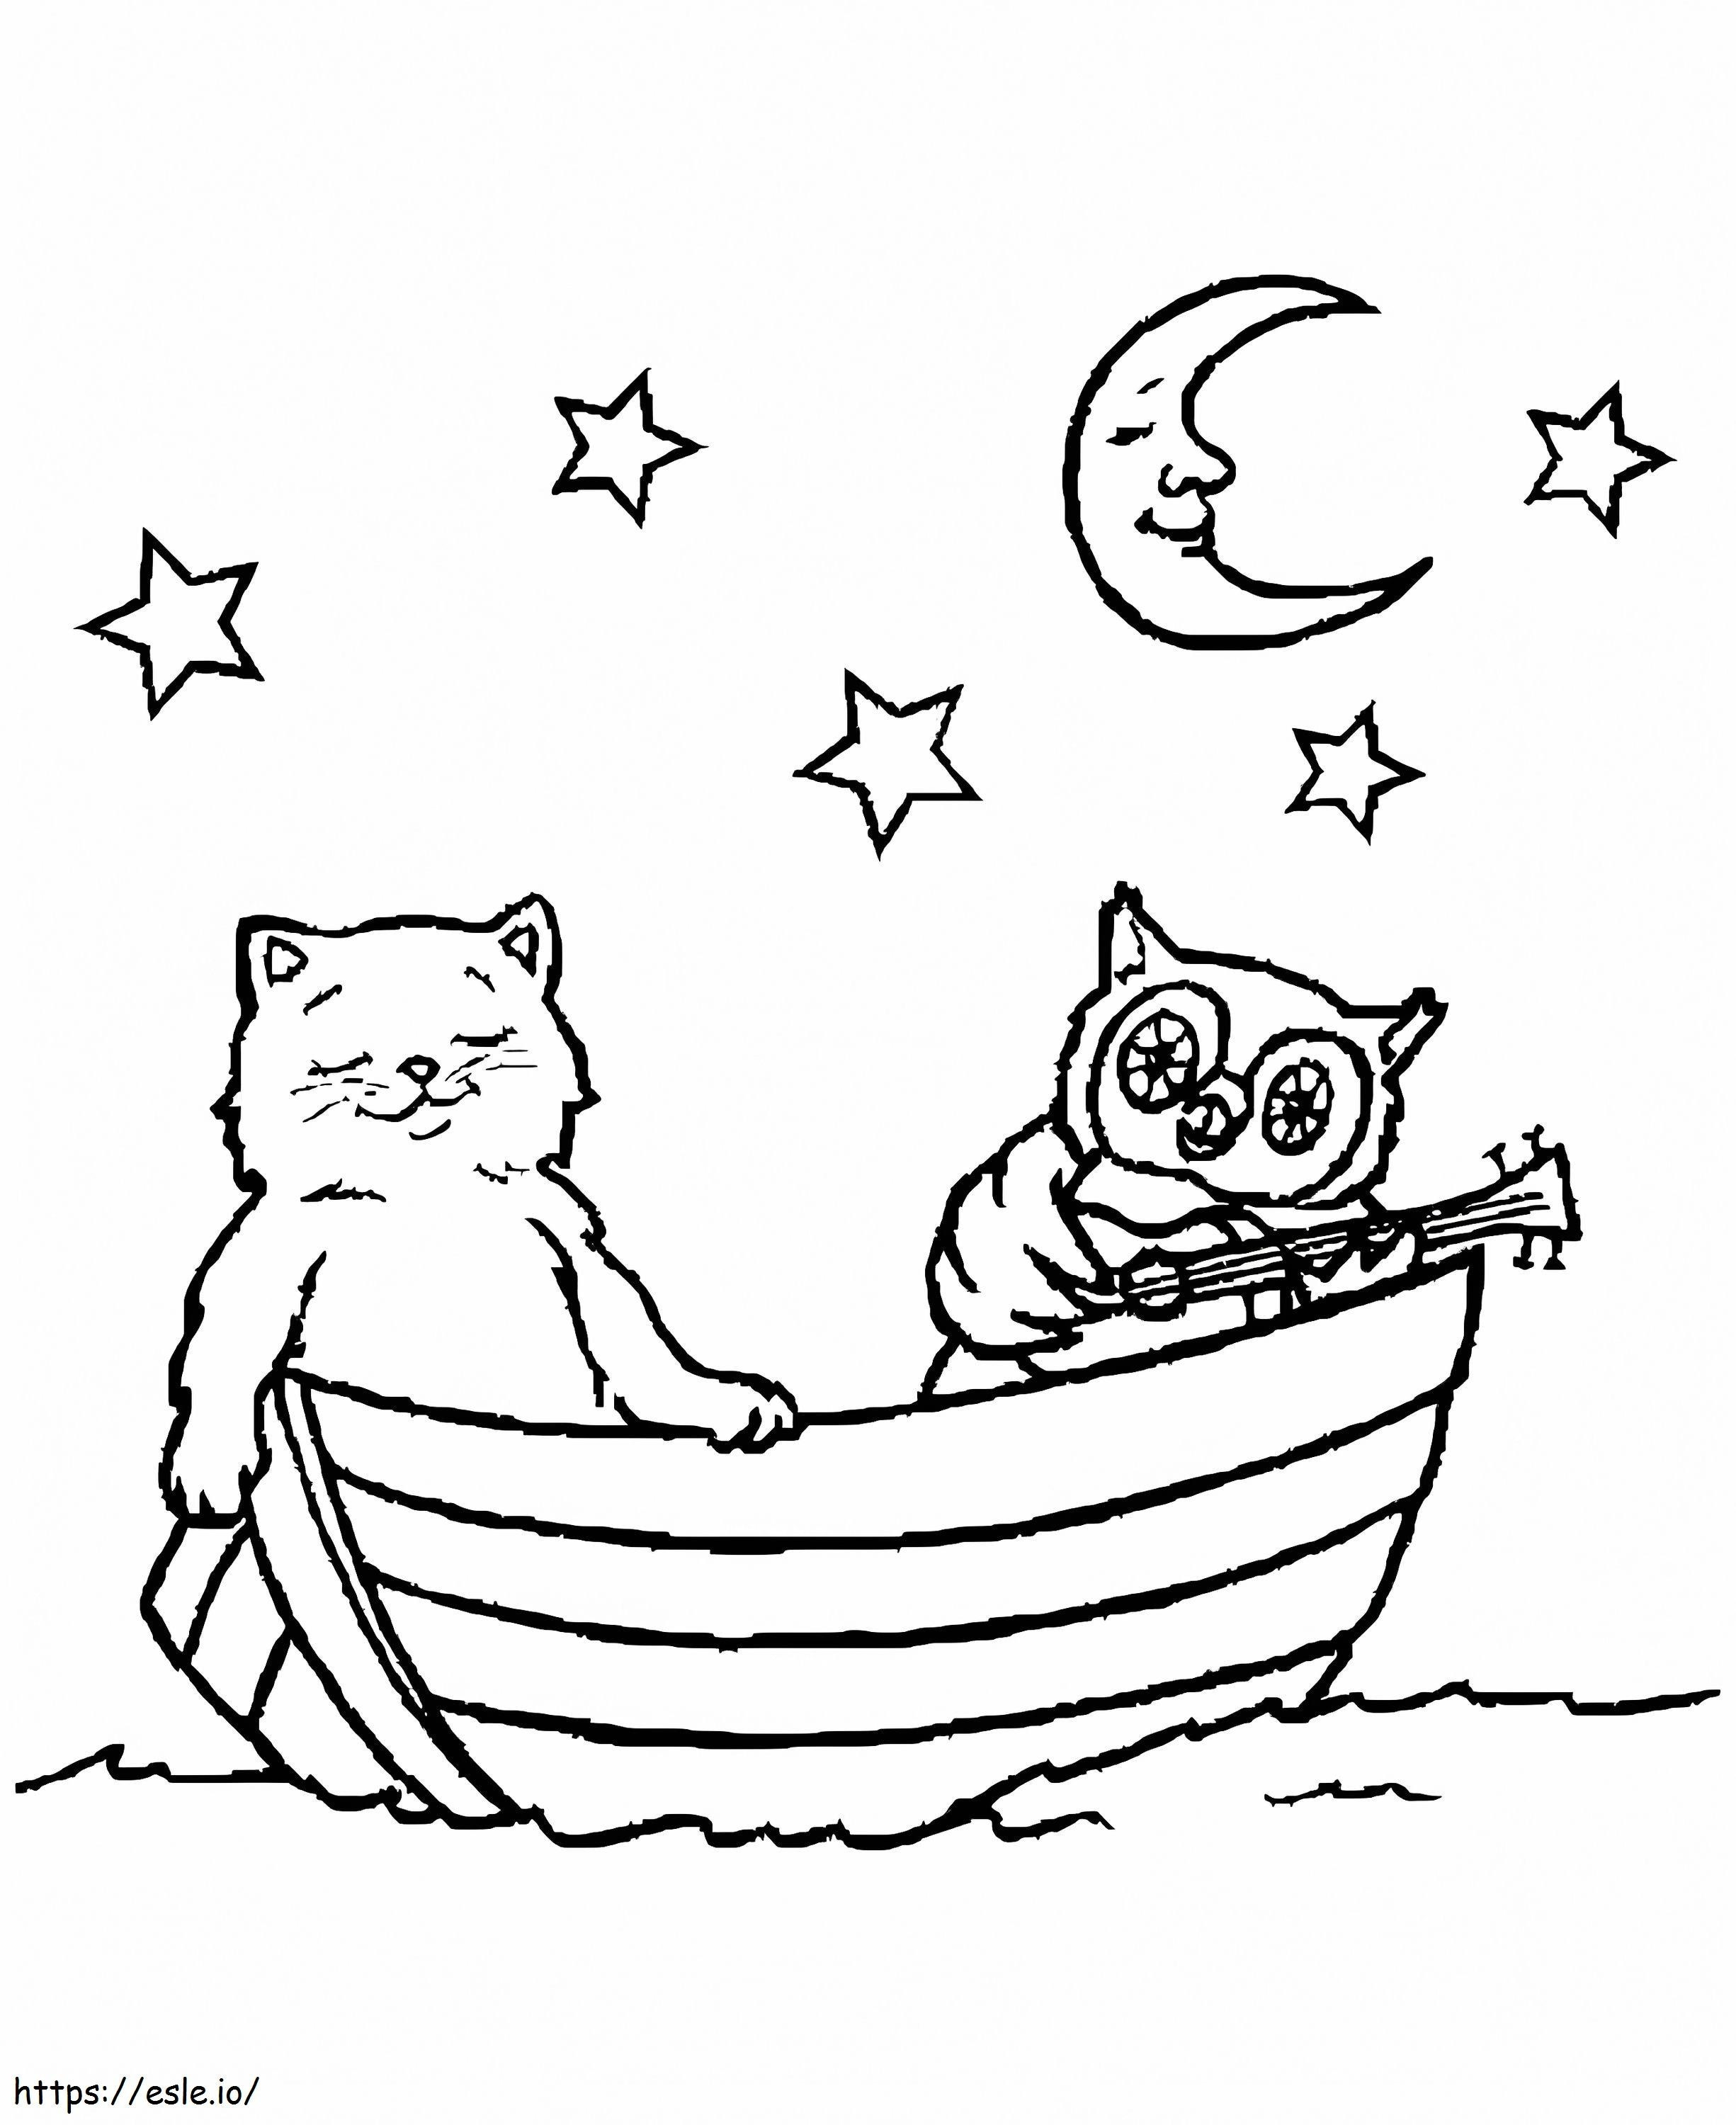 Gato e coruja no barco para colorir